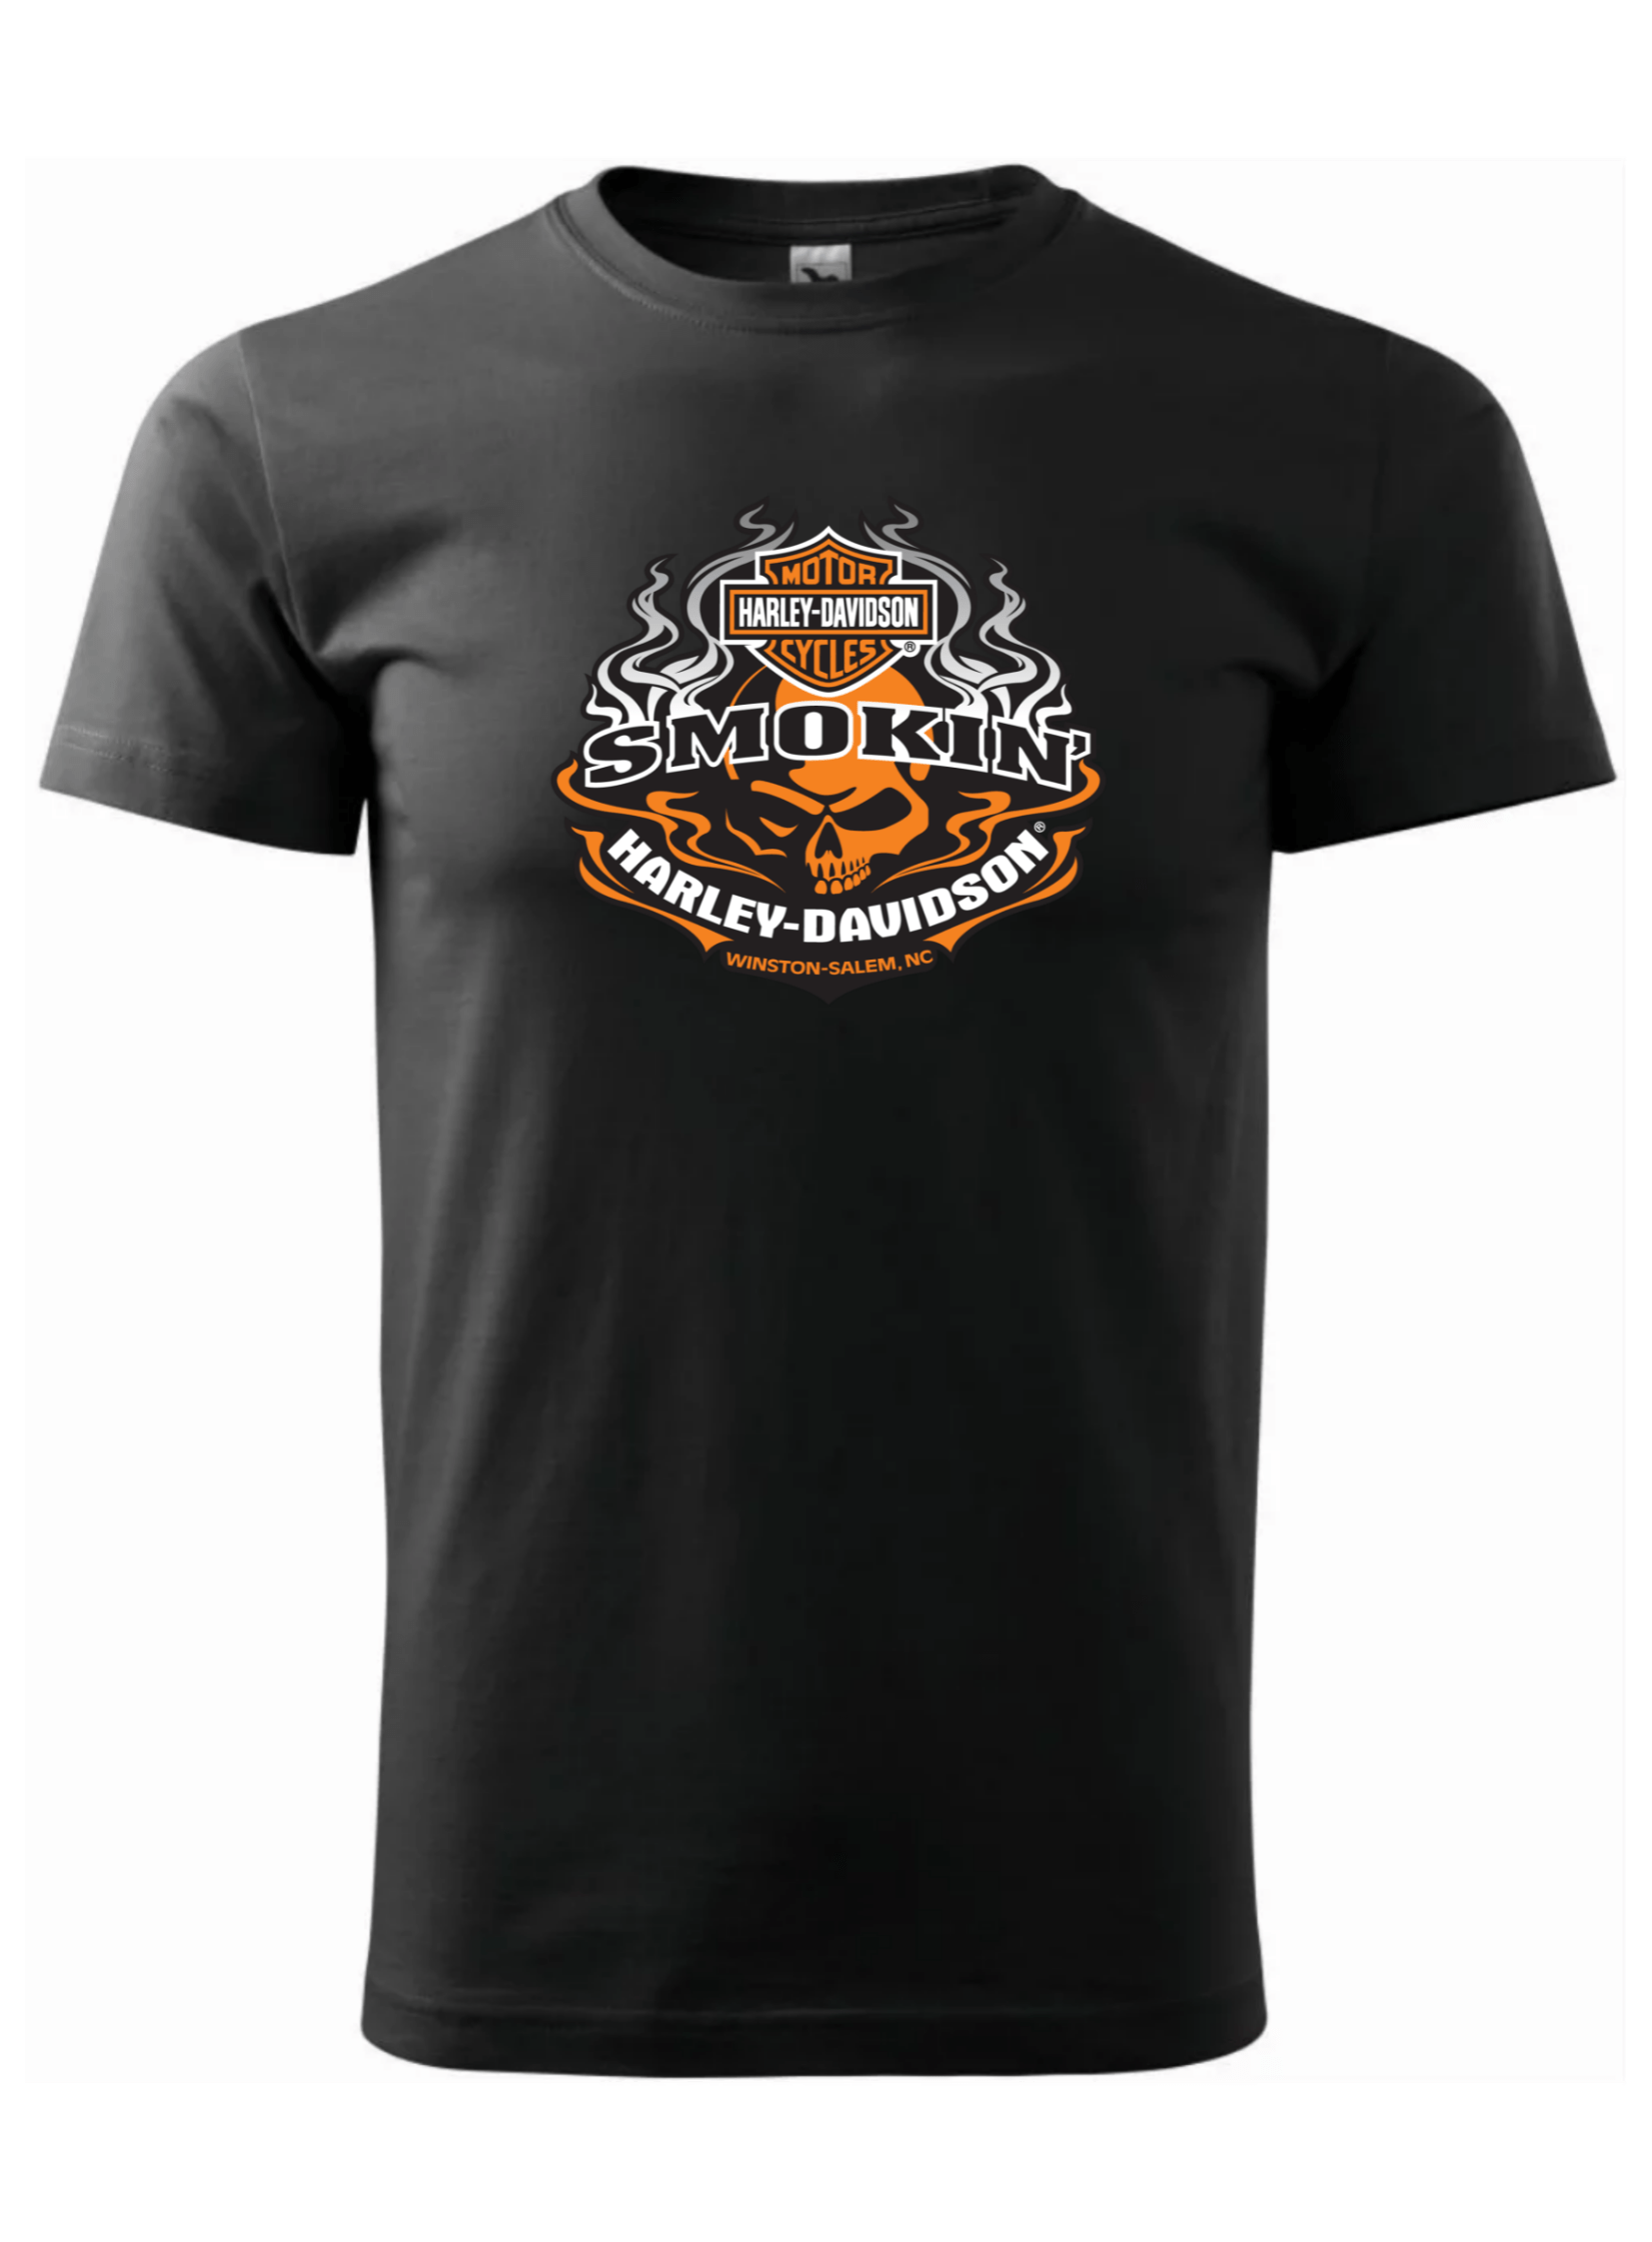 Pánské tričko s potiskem značky Harley Davidson 5